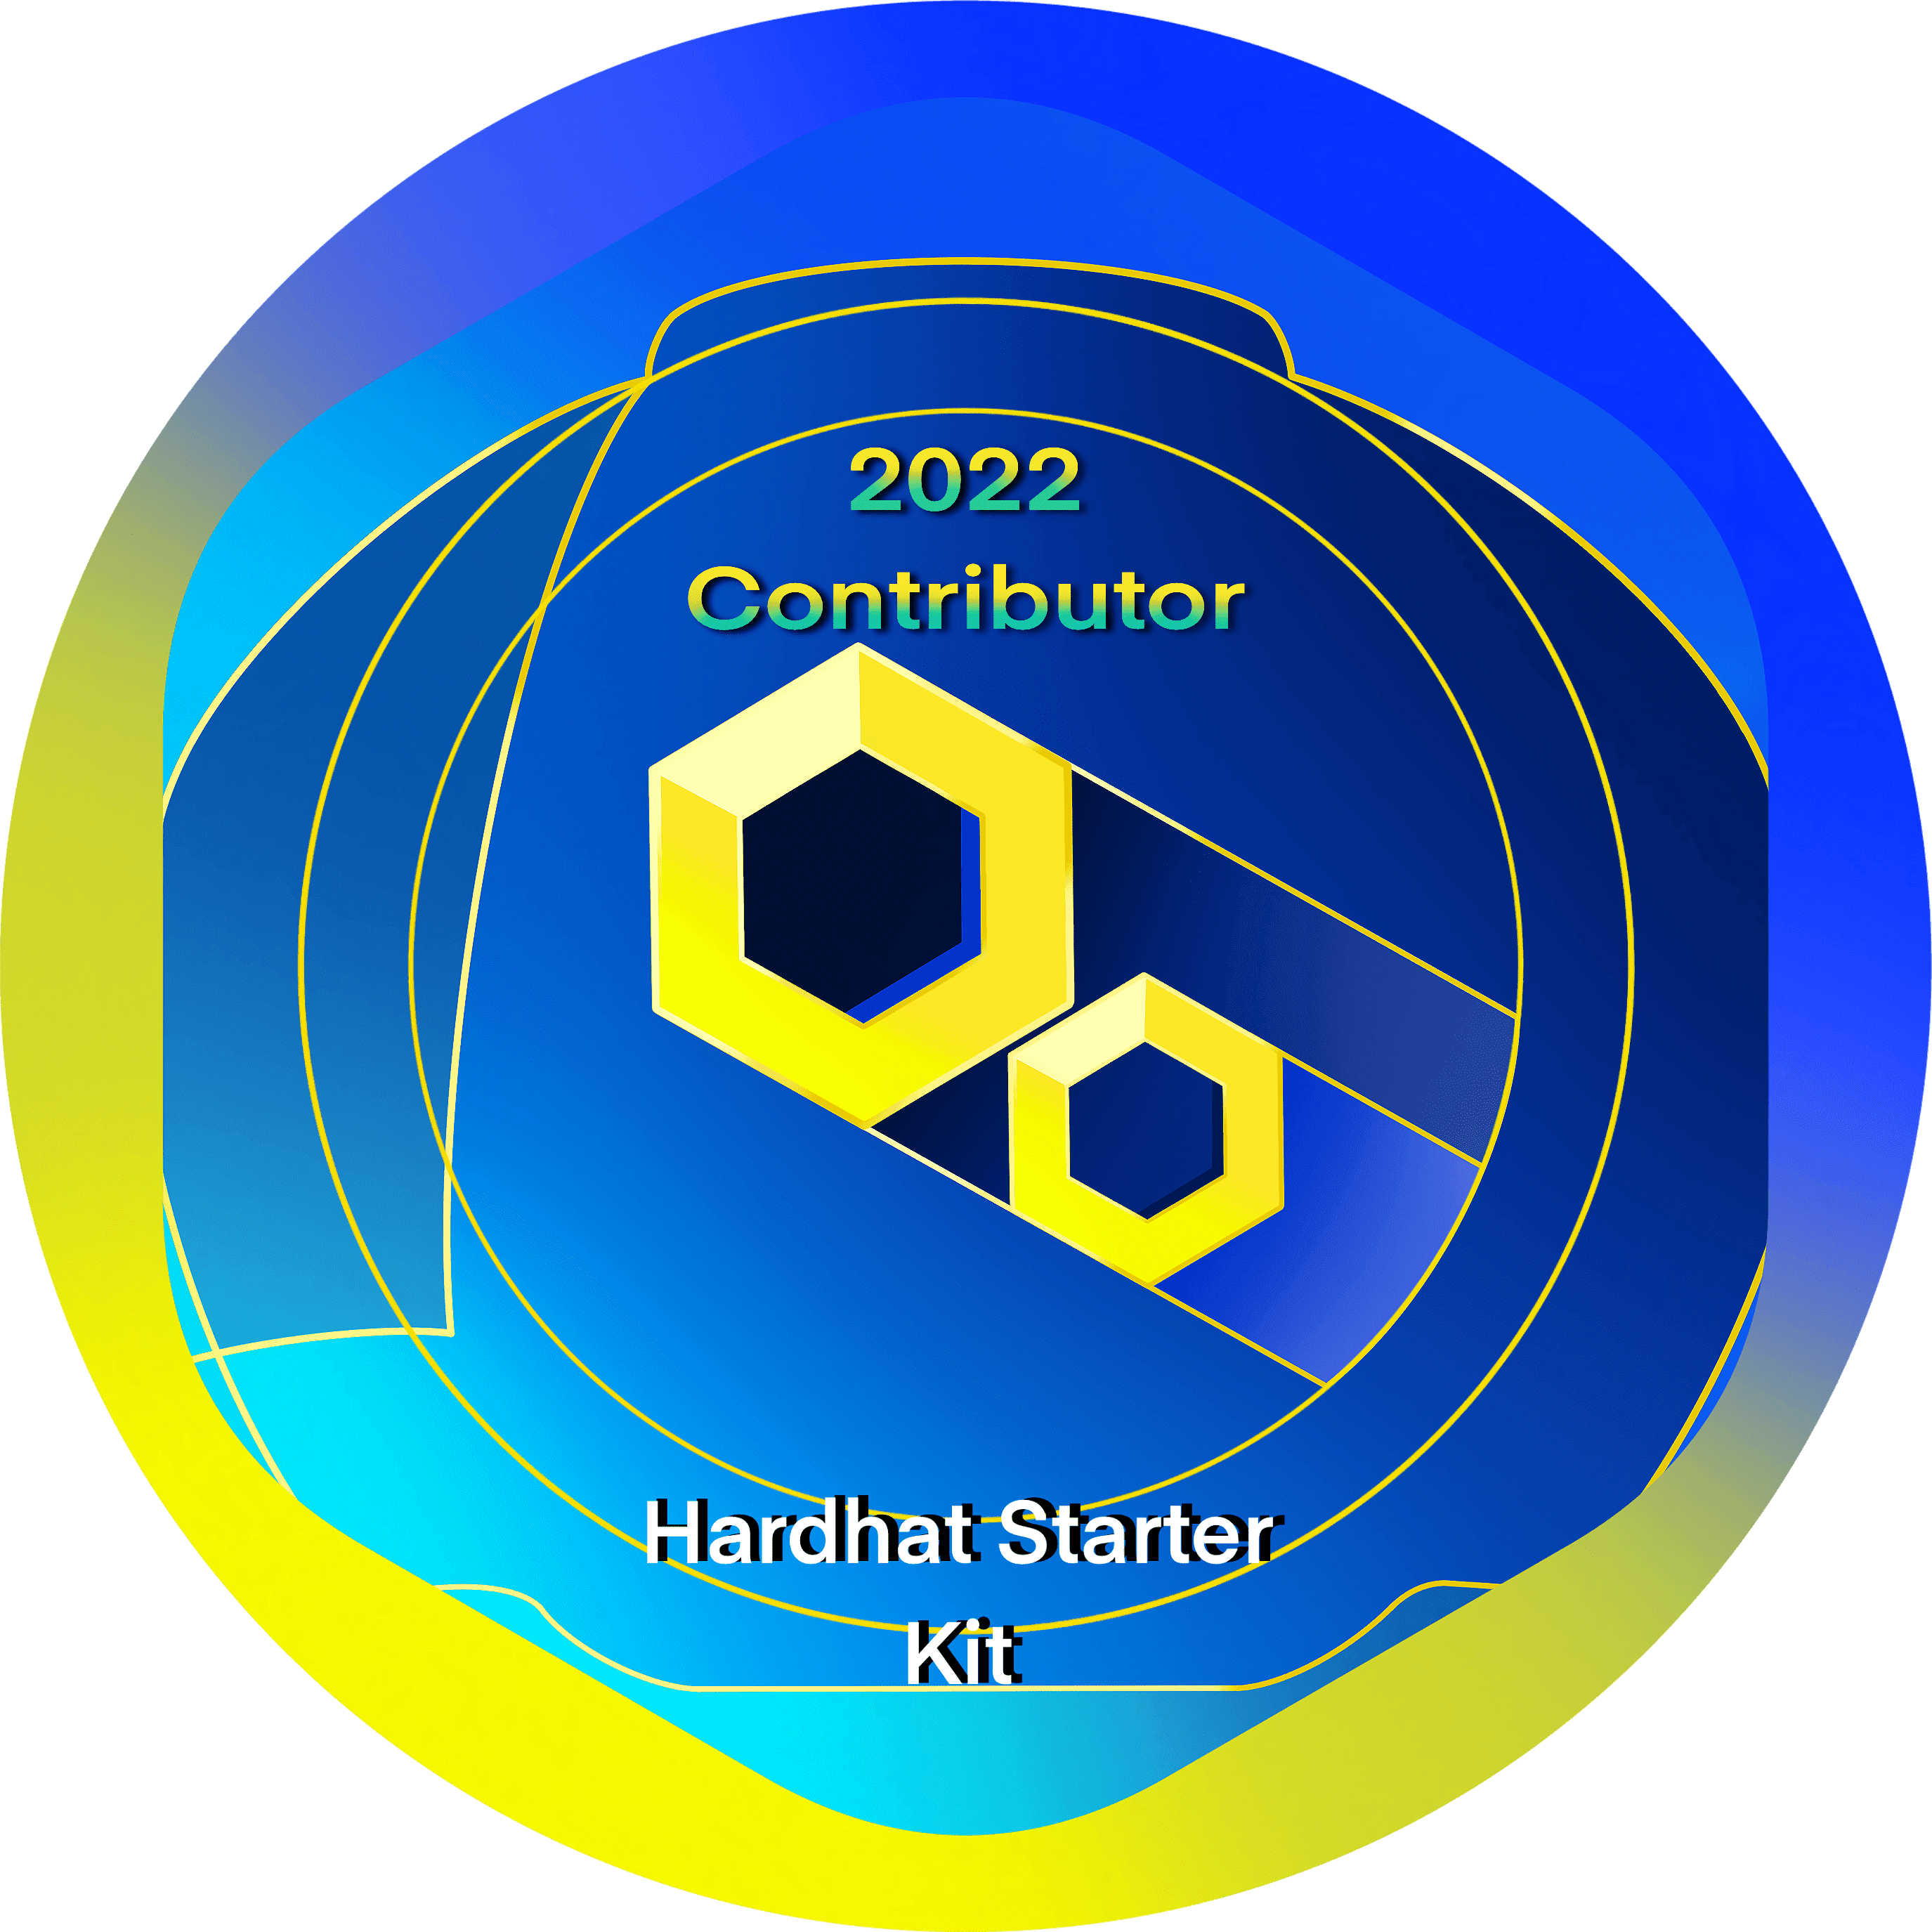 2022 Hardhat Starter Kit Contributor